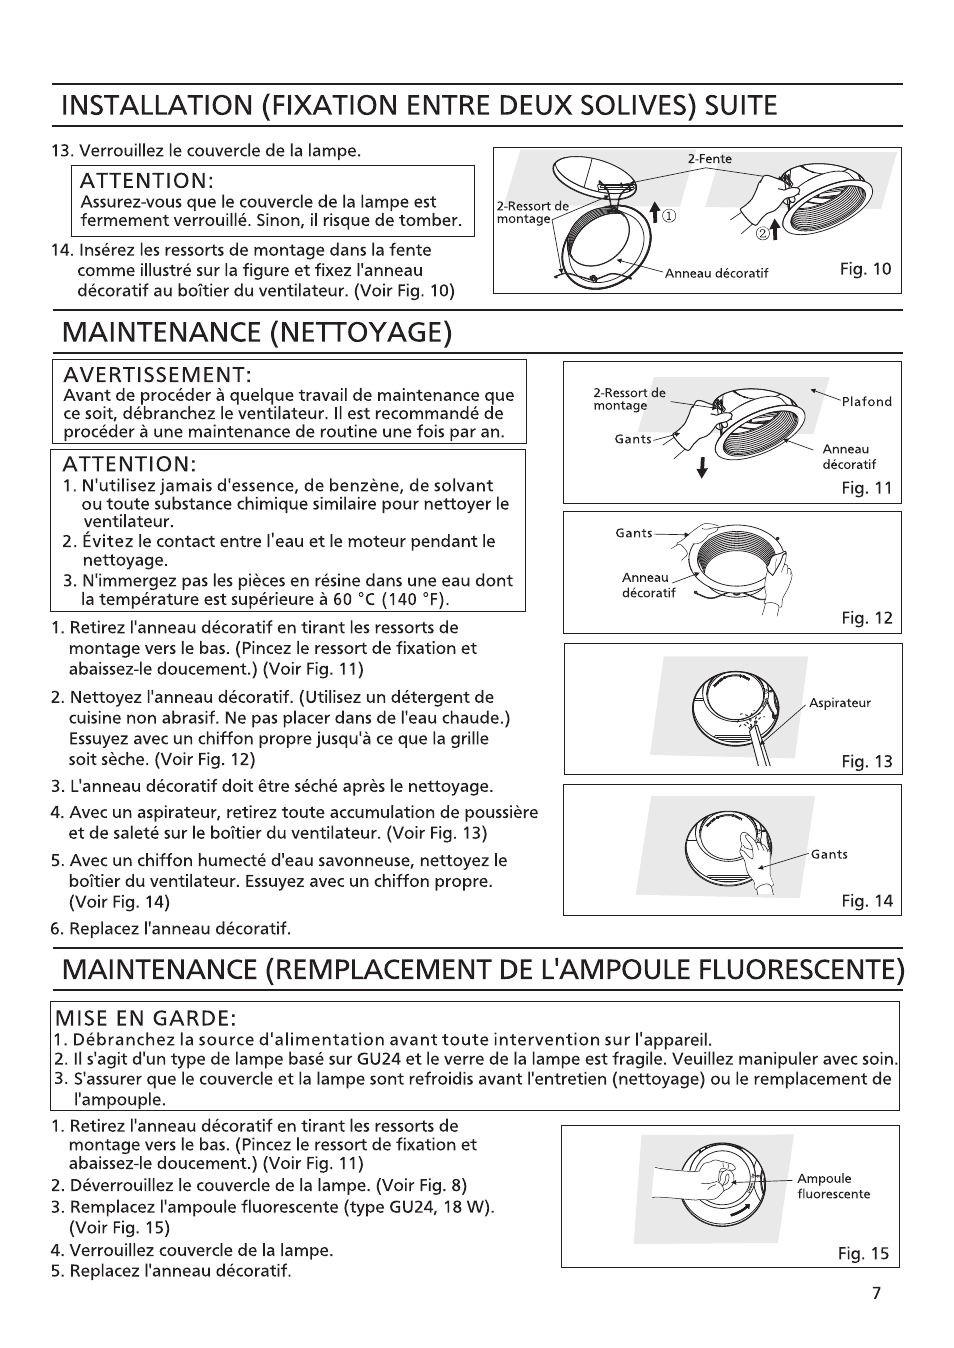 Attention, Avertissement, Mise en garde | Installation (fixation entre deux solives) suite, Maintenance (nettoyage) | Panasonic FV-08VRL1 Manuel d'utilisation | Page 7 / 8